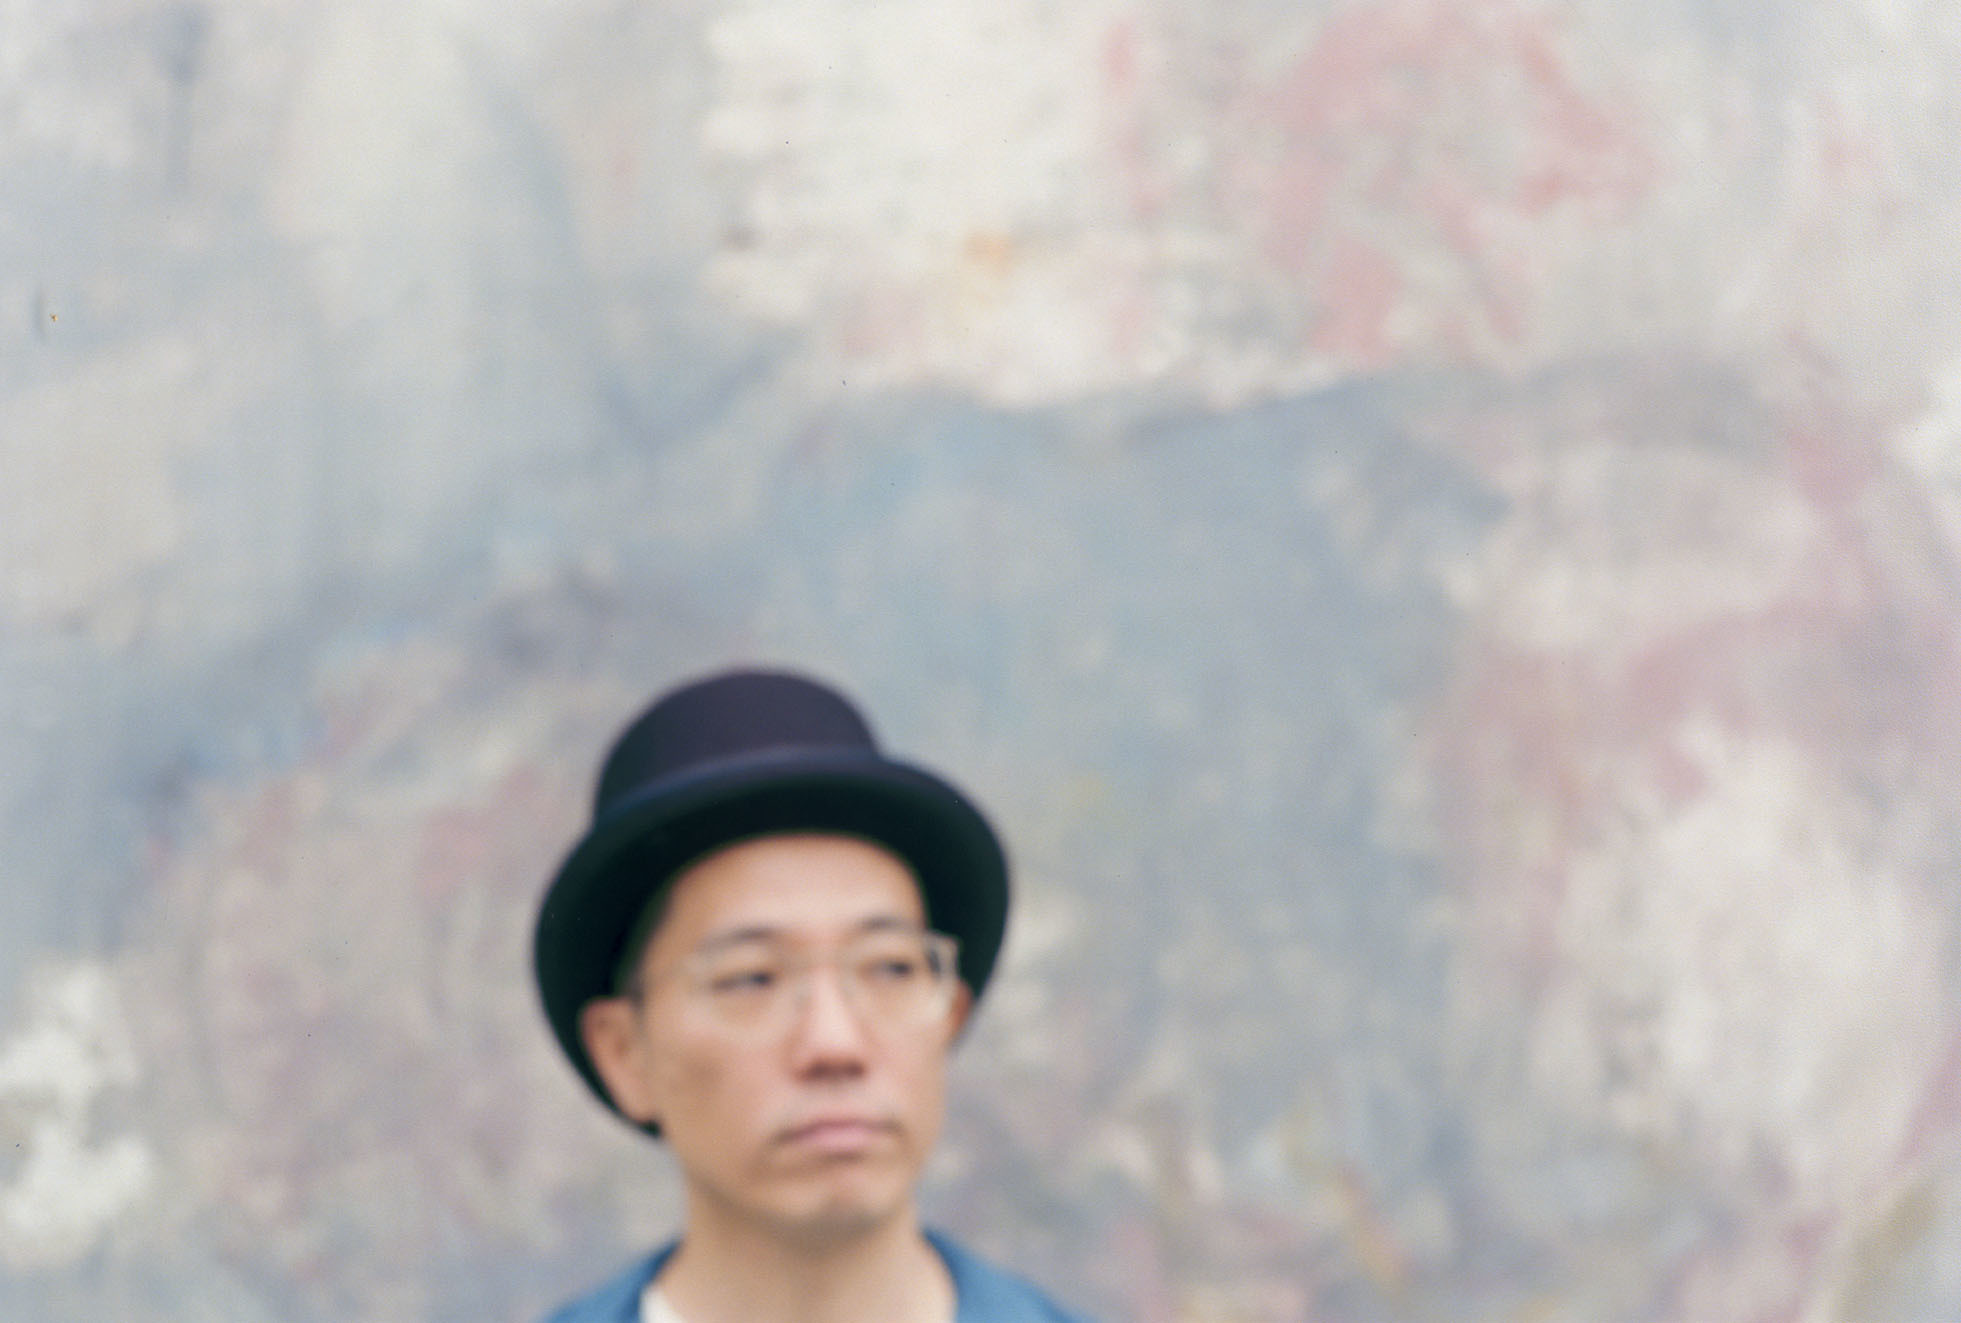 ハナレグミ オリジナルアルバム Shinjiteru を10月にリリース決定 ジャケット 新アーティスト写真も公開に Spice エンタメ特化型情報メディア スパイス